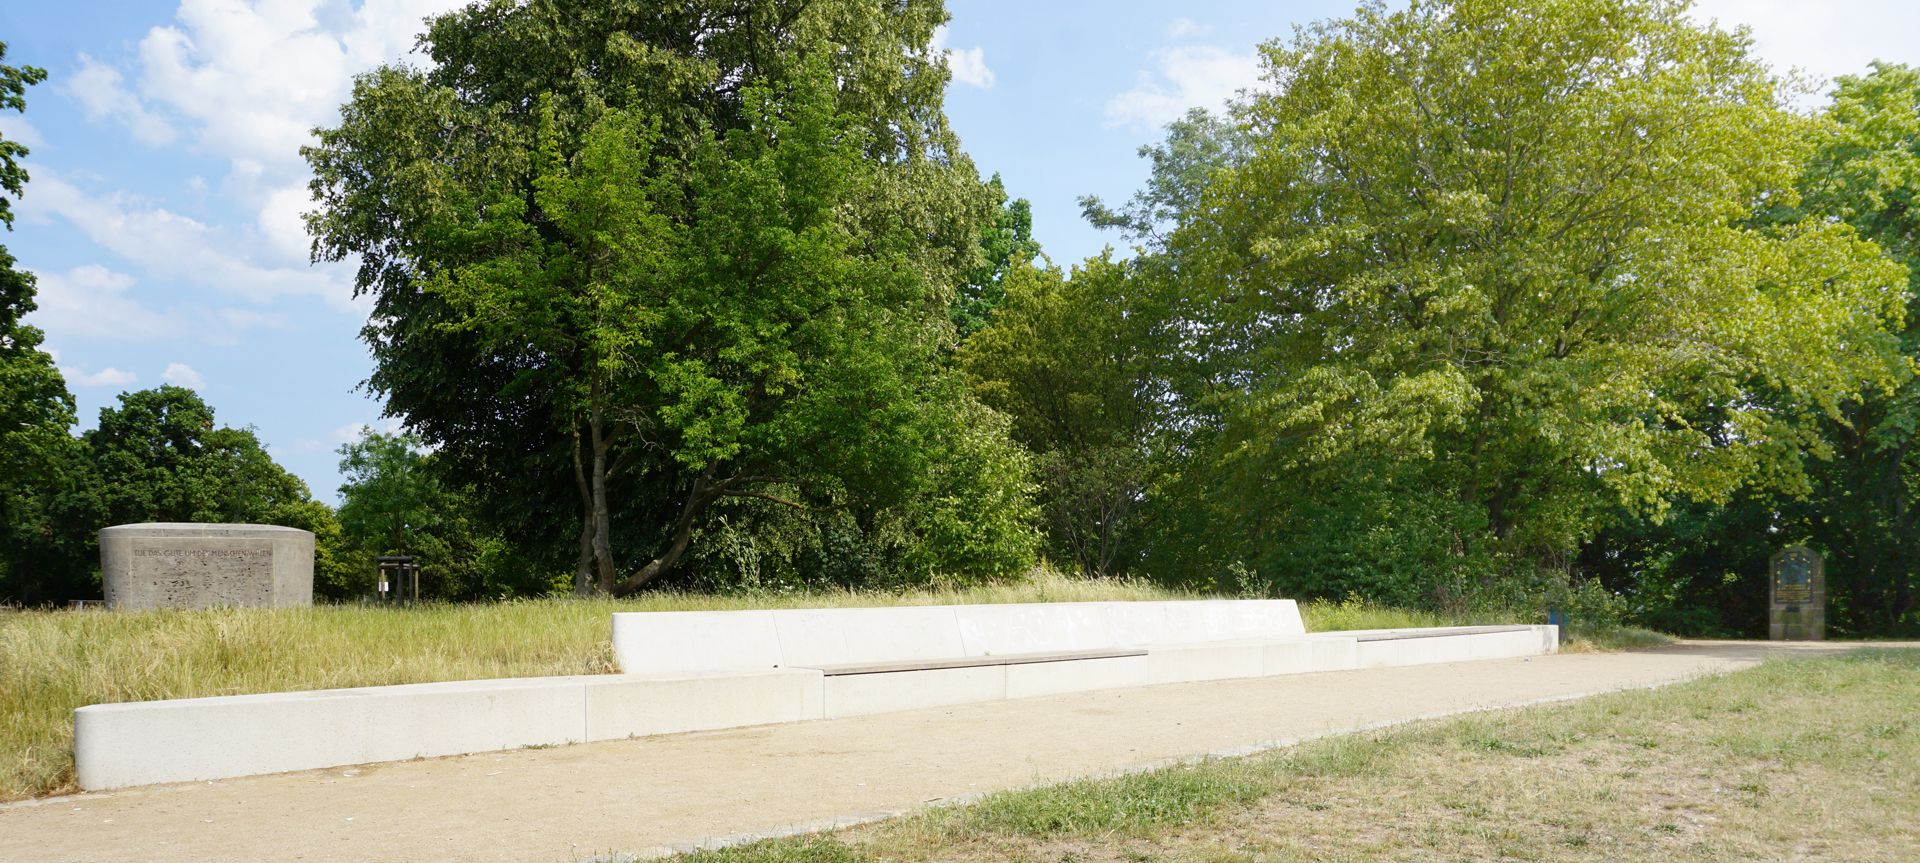 Gedenktafel, Ludwig Andreas Feuerbach "Panoramabank" auf dem Rechenberg, links Denkmal von 1955, rechts Gedenktafel von 1906 (Standort seit 1999)